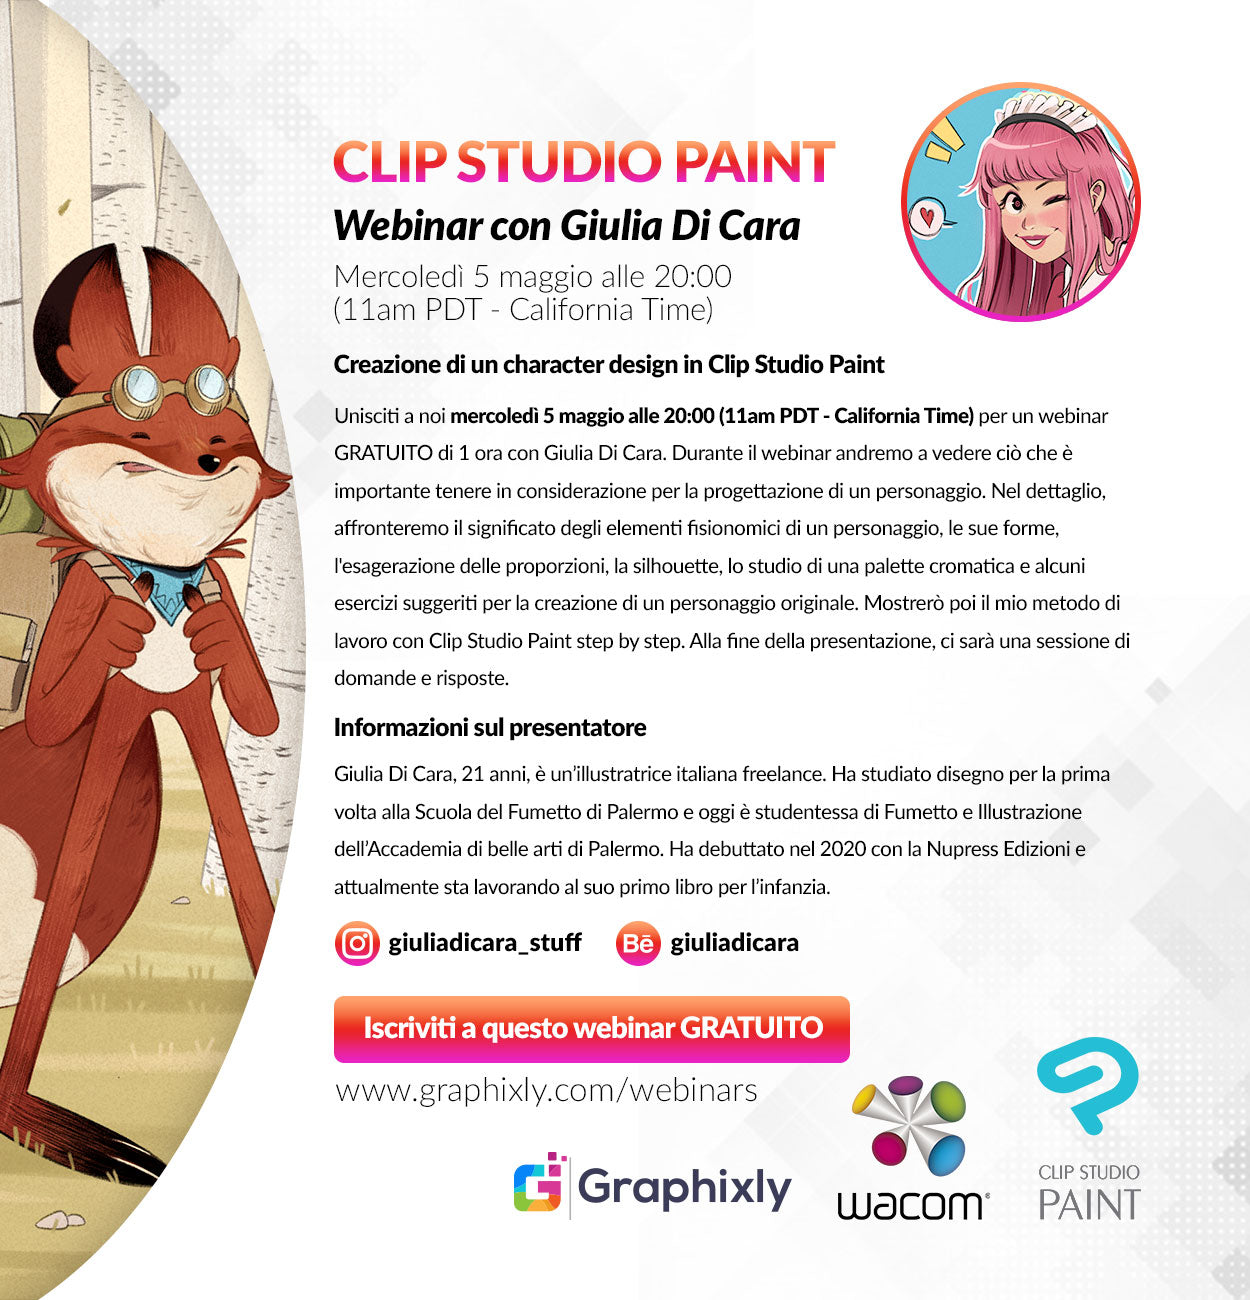 Webinar (Italian) - Creazione di un character design in Clip Studio Paint con Giulia Di Cara